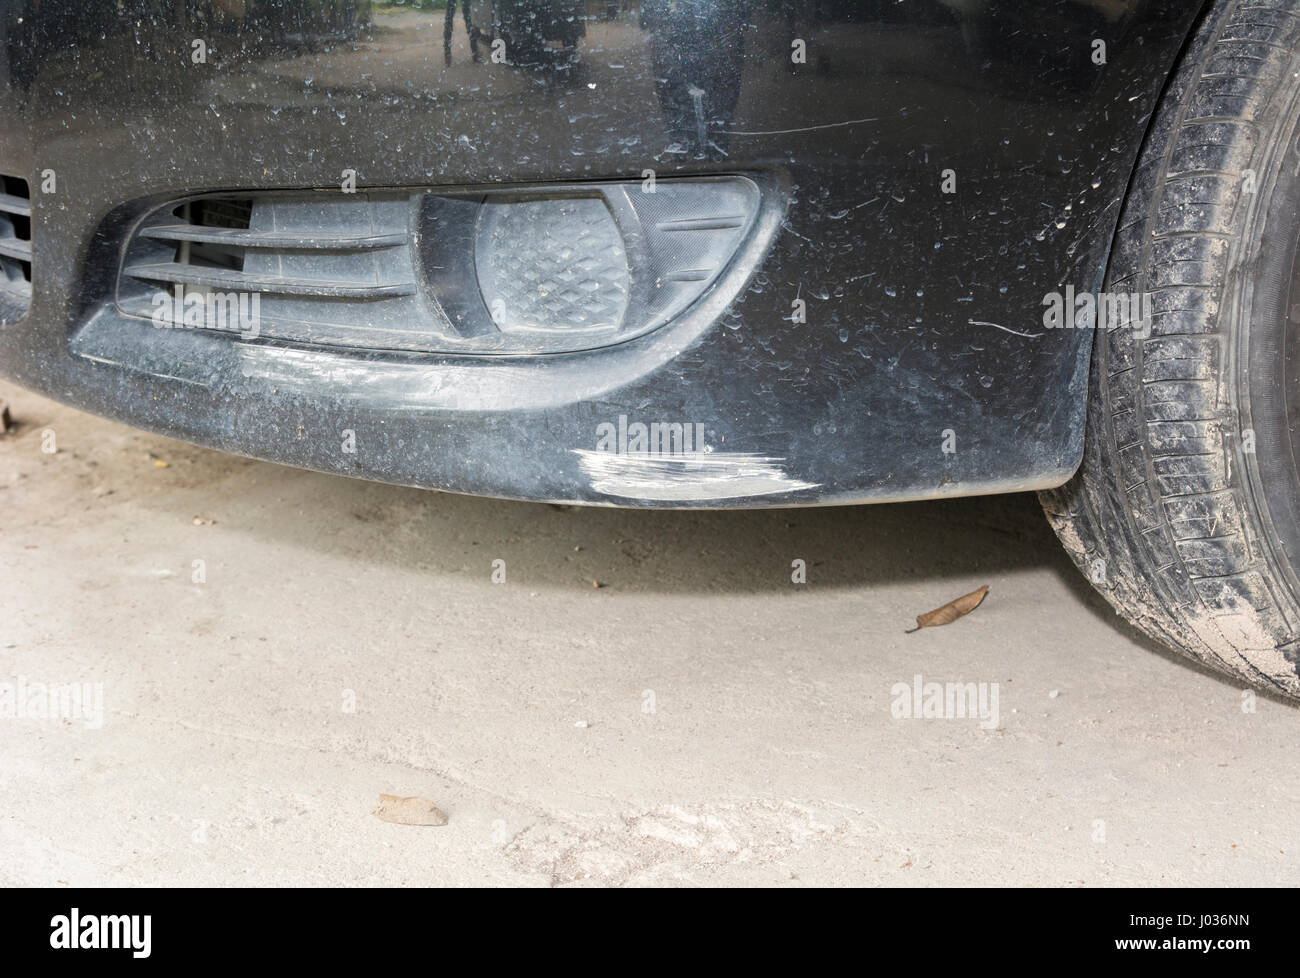 Schwarze vordere Stoßstange Auto mit tiefen Schäden an den Lack zerkratzt  Stockfotografie - Alamy